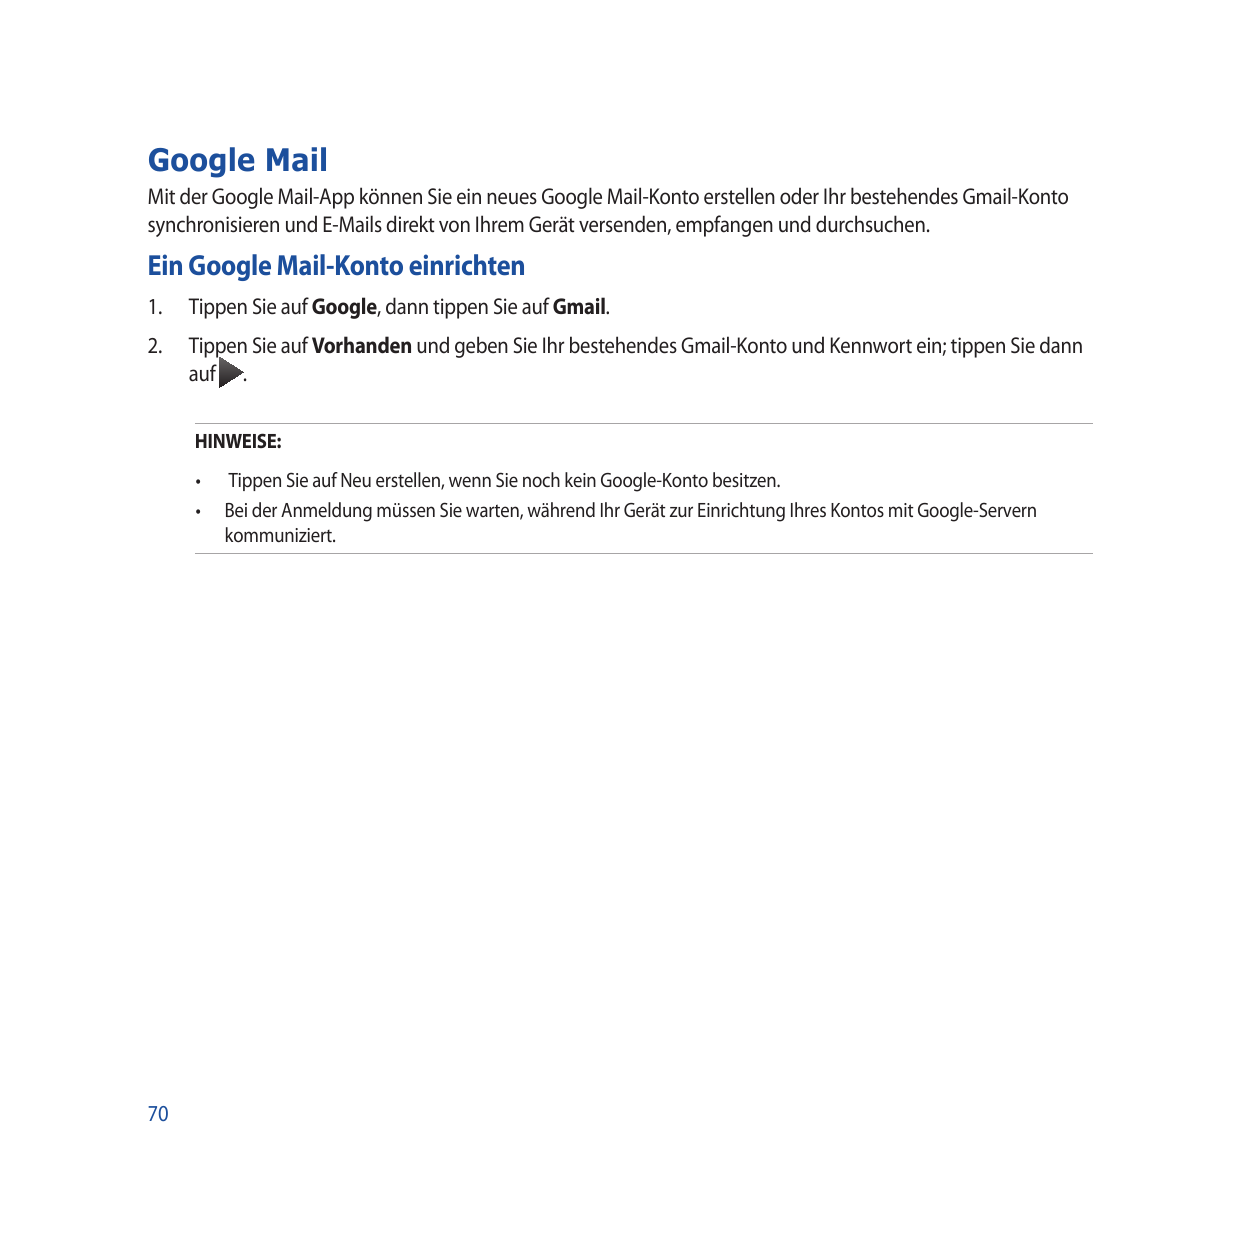 Google MailMit der Google Mail-App können Sie ein neues Google Mail-Konto erstellen oder Ihr bestehendes Gmail-Kontosynchronisie